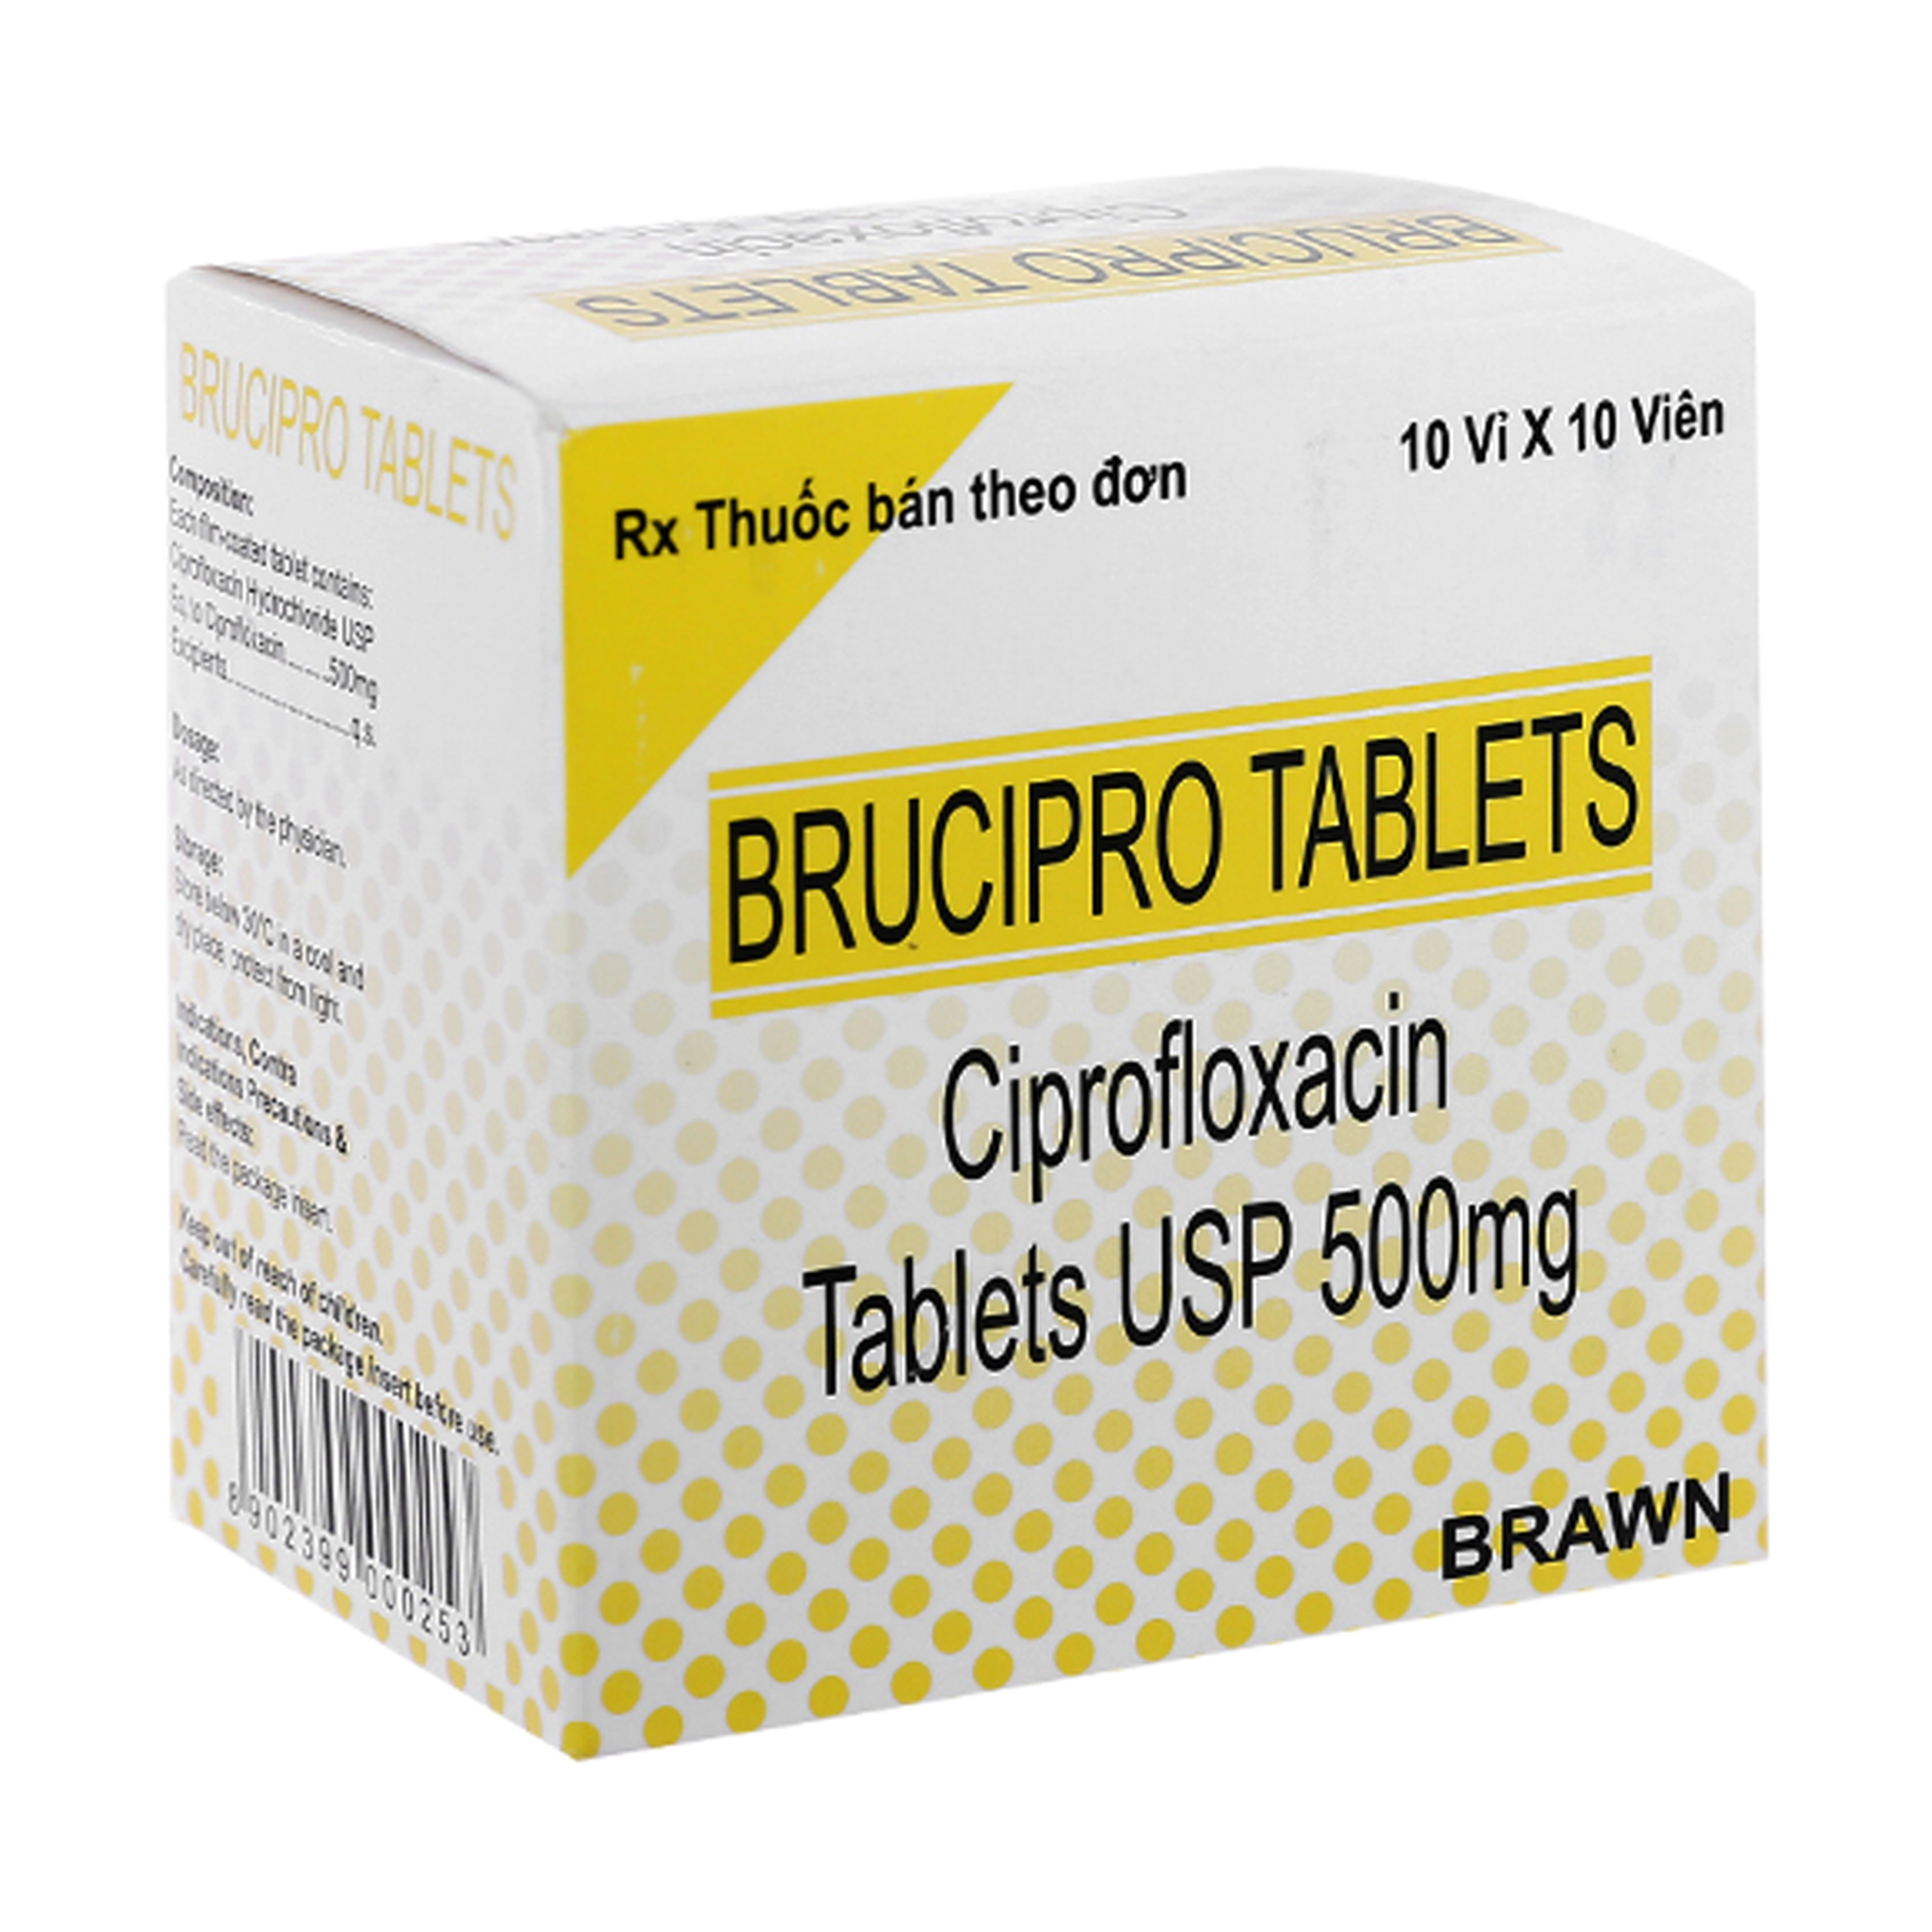 Thuốc Brucipro Tablets 500Mg điều trị nhiễm khuẩn nặng (10 vỉ x 10 viên)